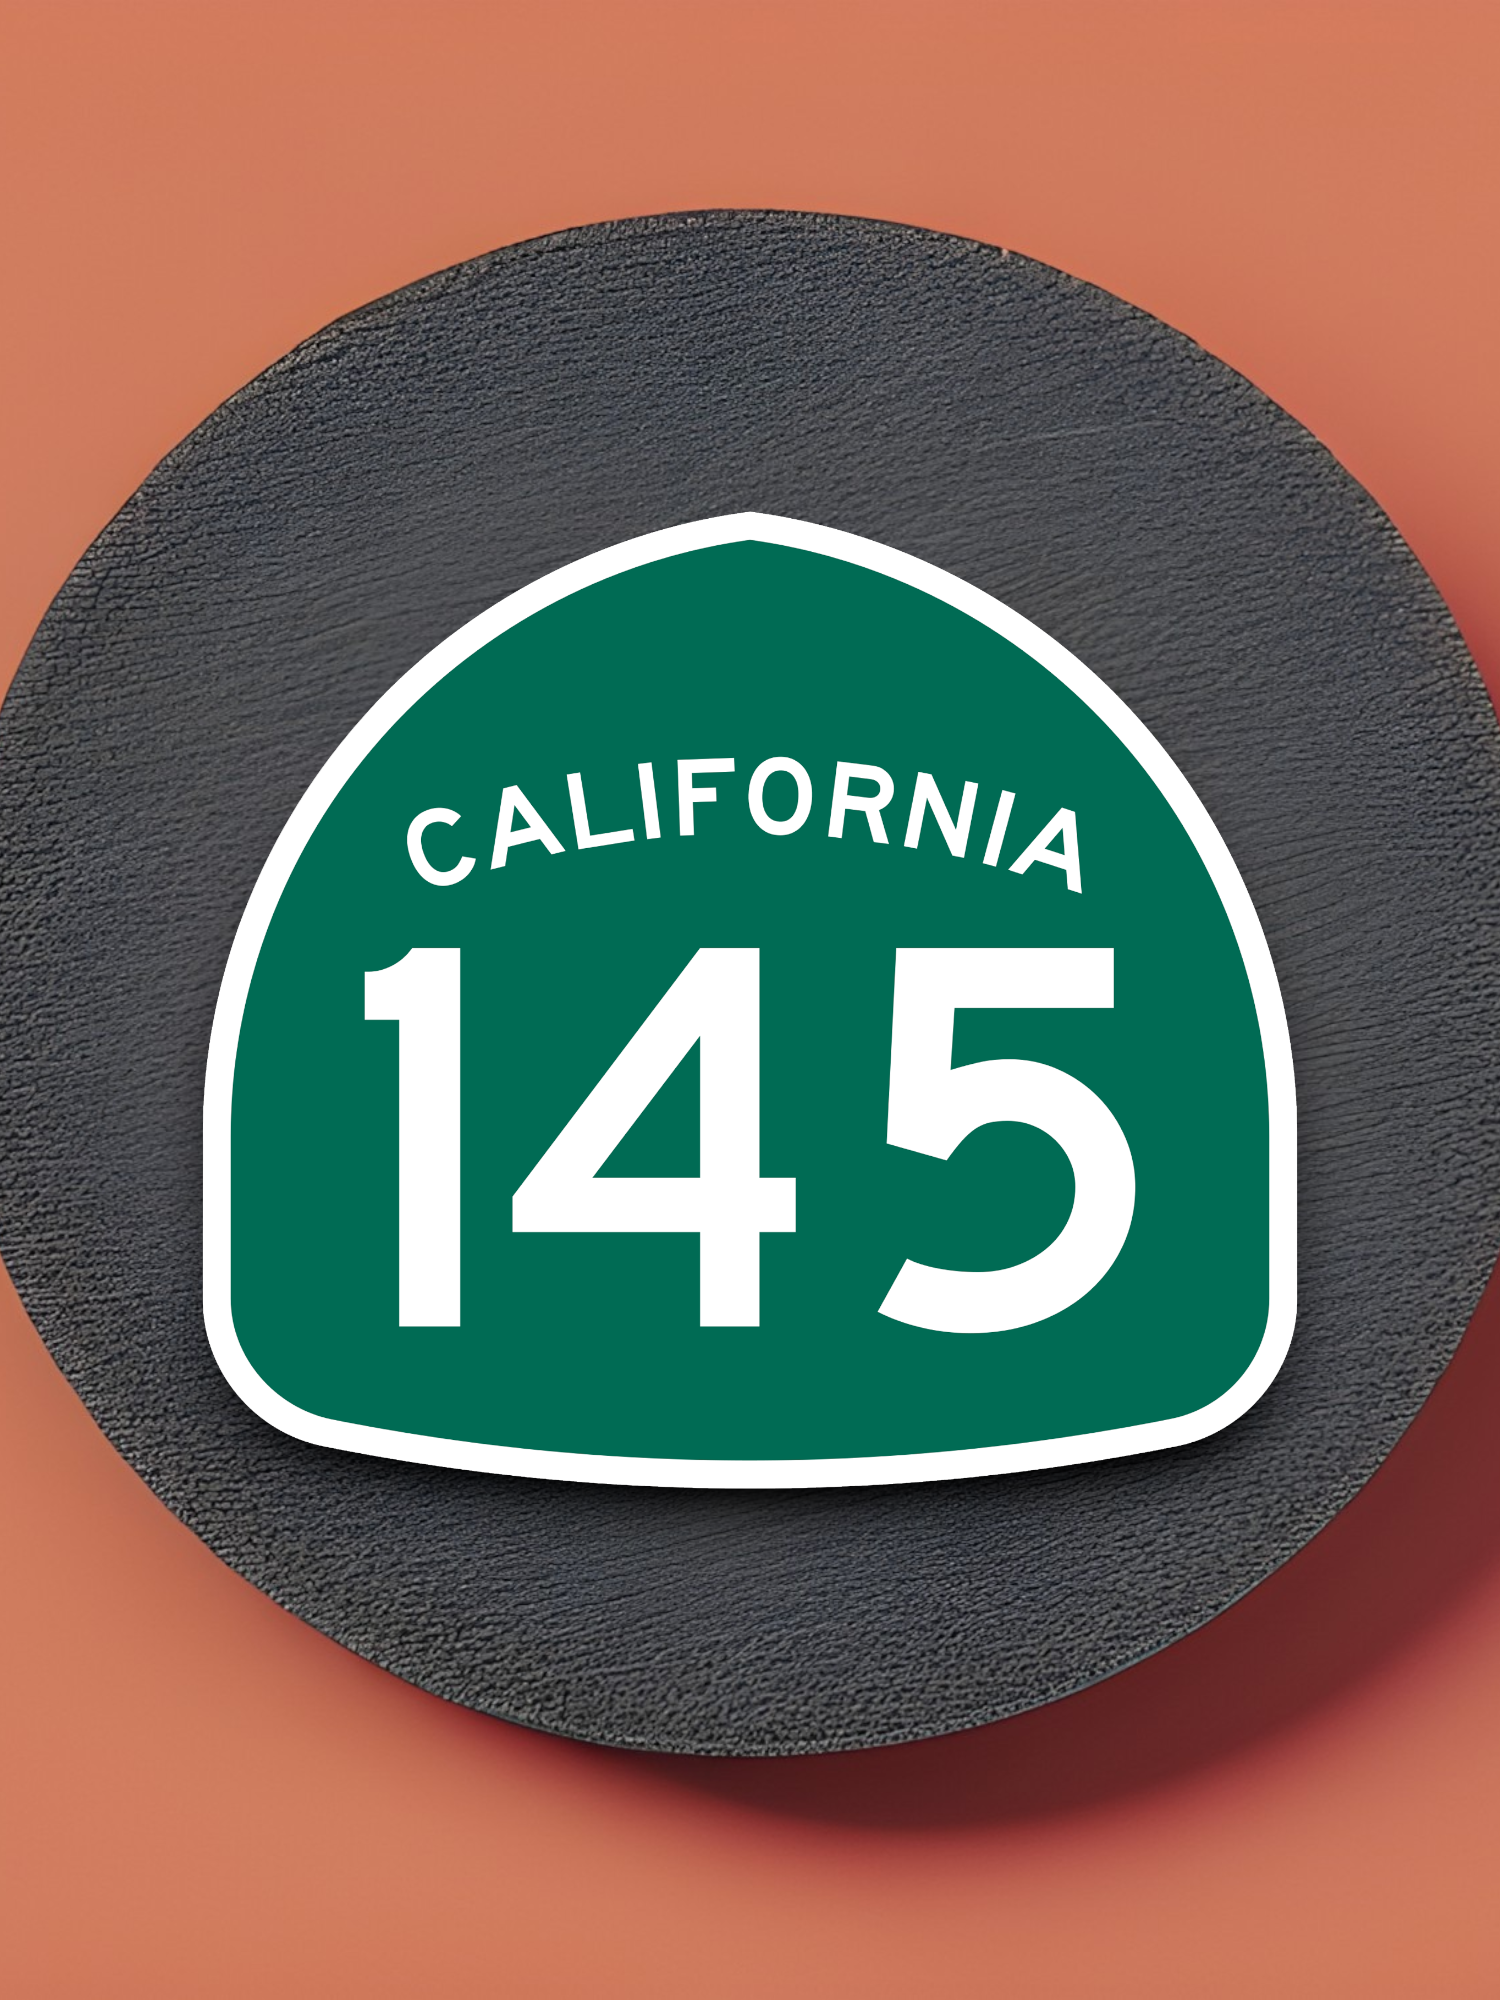 California State Route 145 Sticker